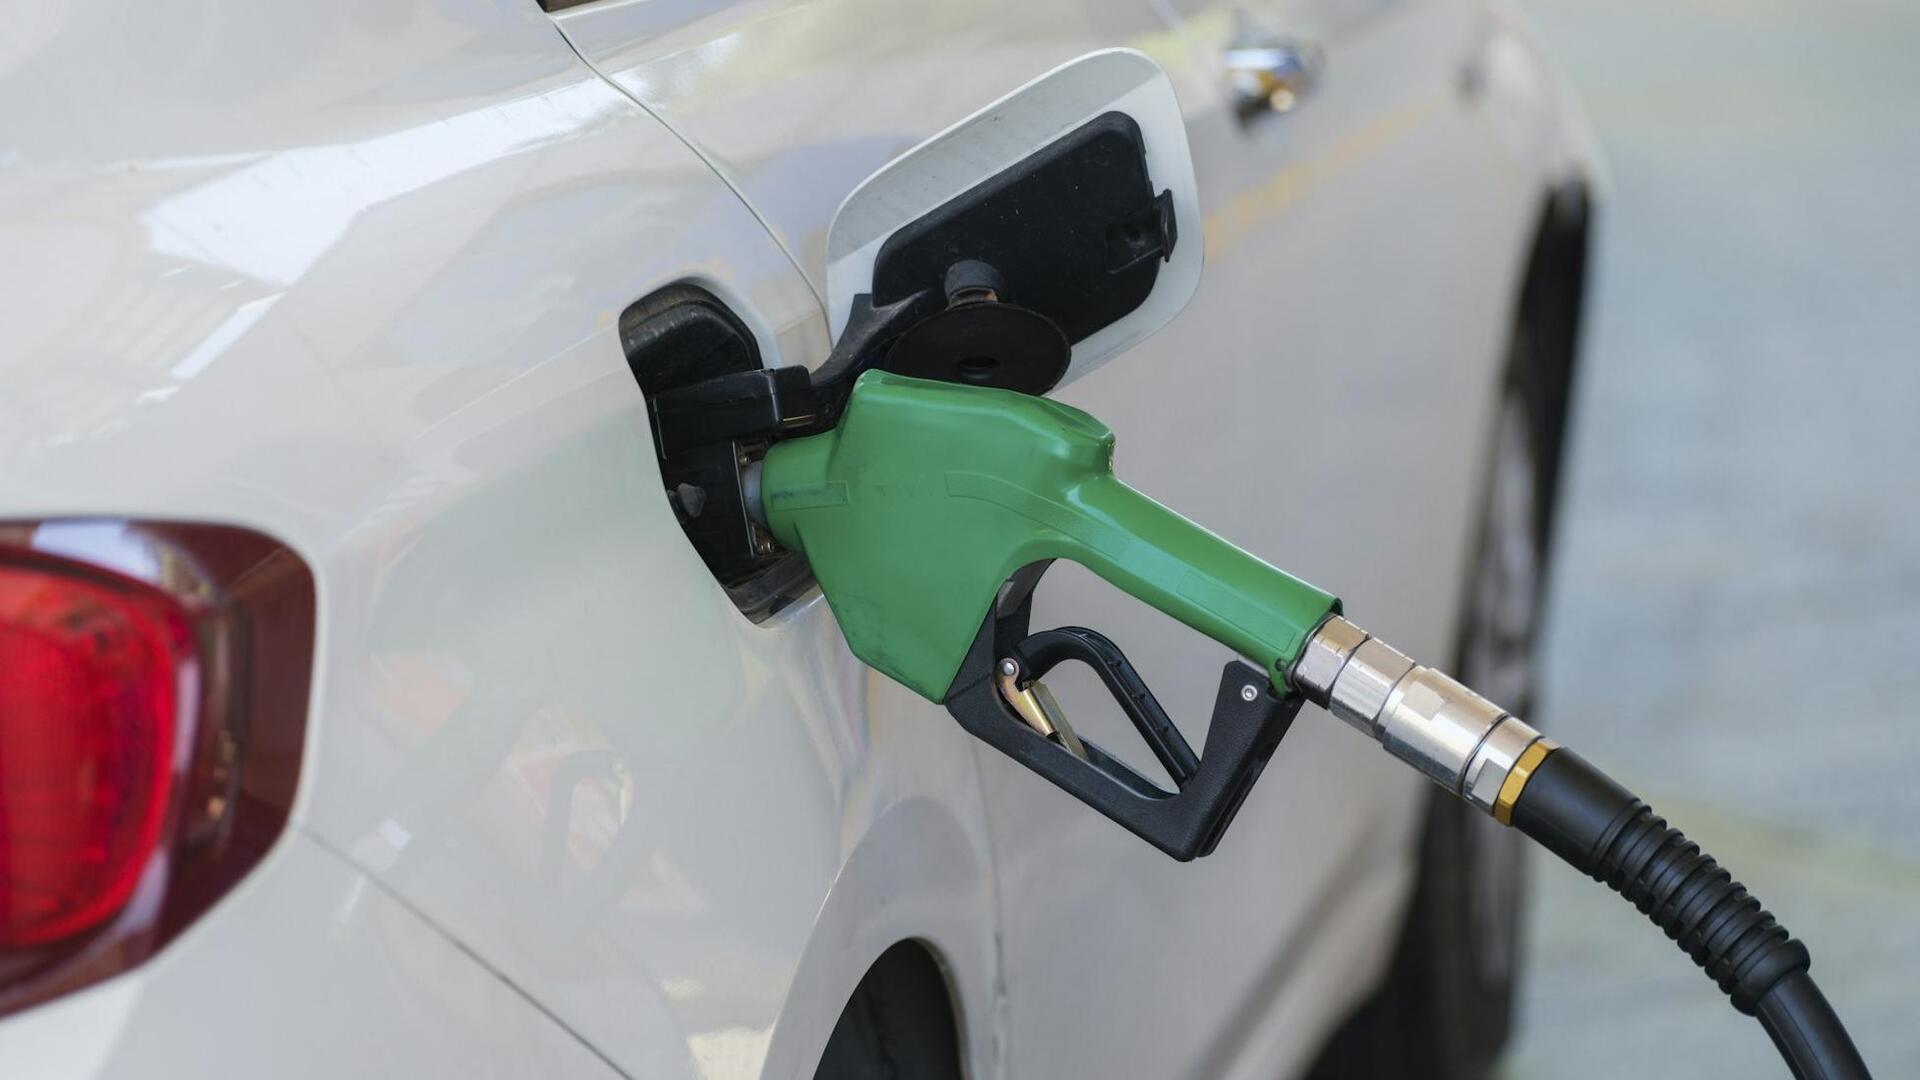 पेट्रोल-डीजल की कीमत: 8 दिसंबर के लिए नए भाव जारी, कहां-कितने बदले?